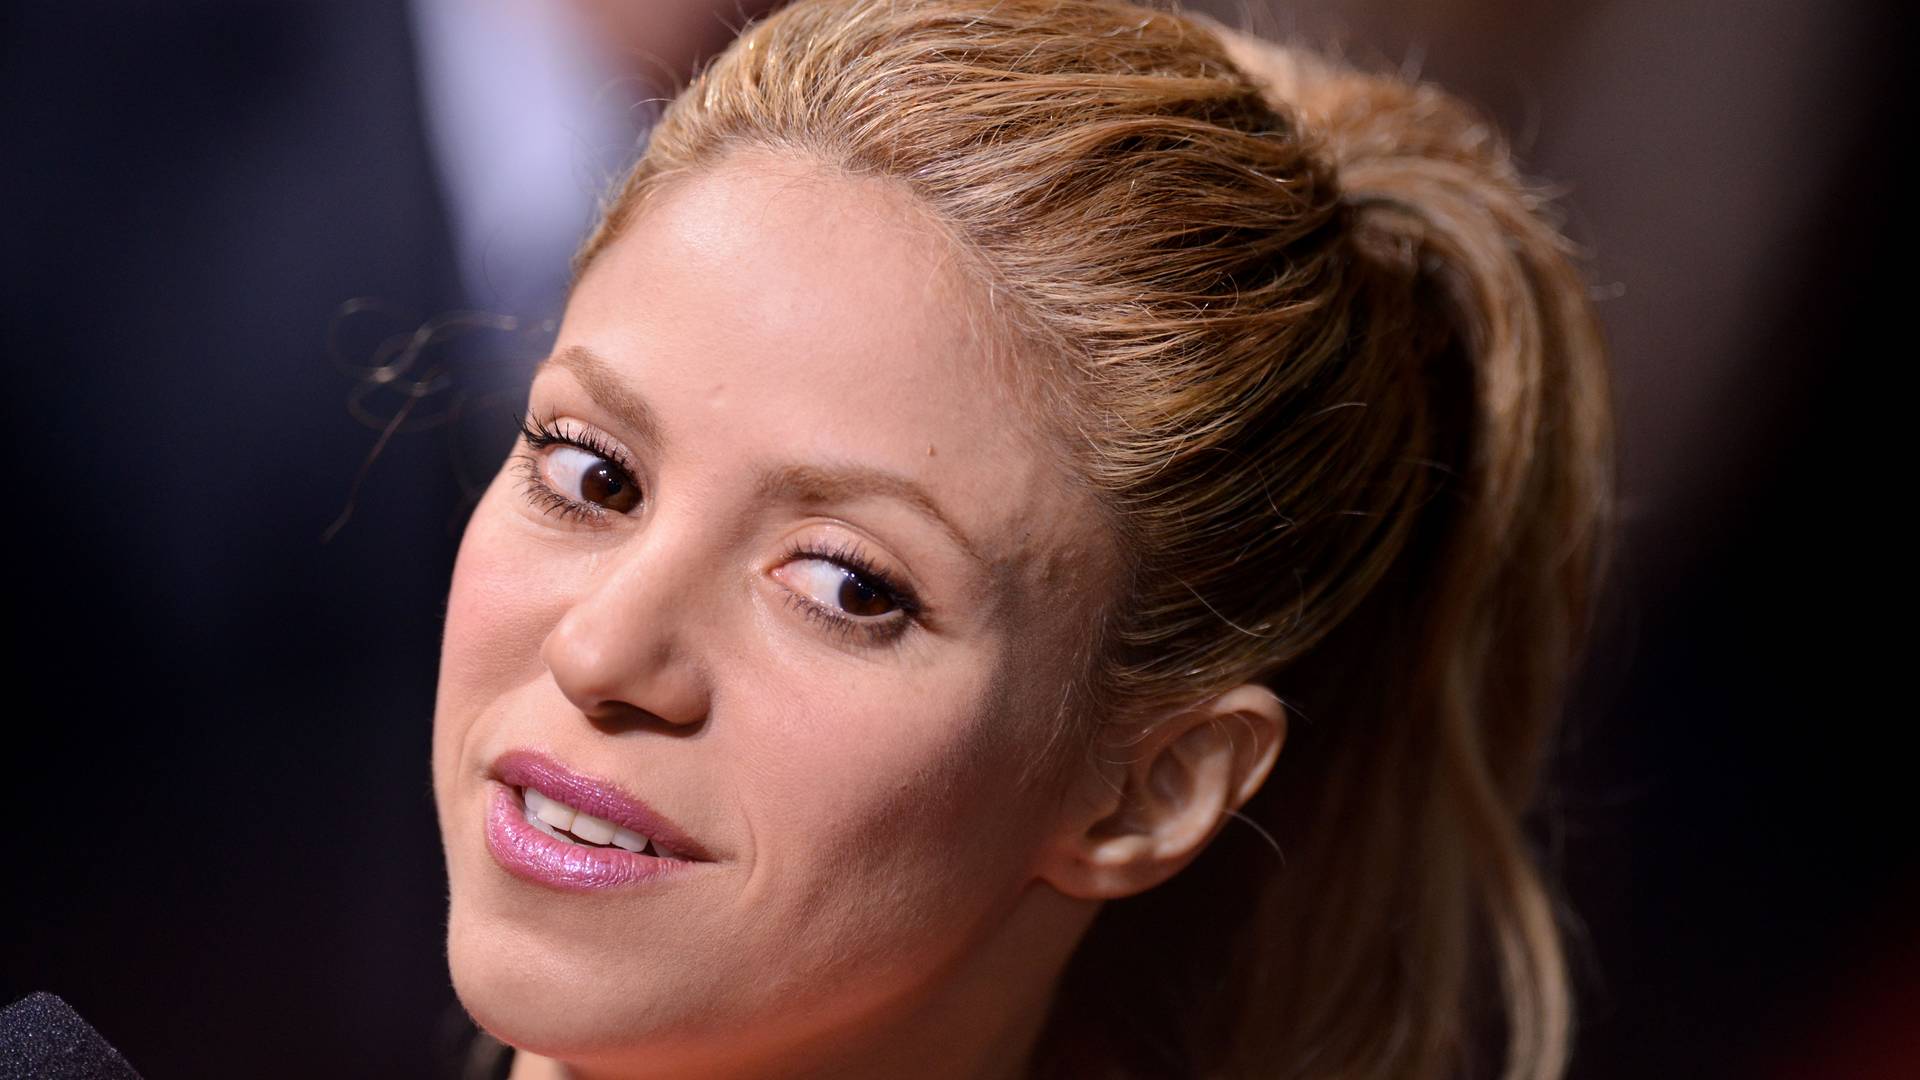 Az utolsó pillanatban állapodott meg Shakira az ügyészséggel az adócsalási pere kapcsán